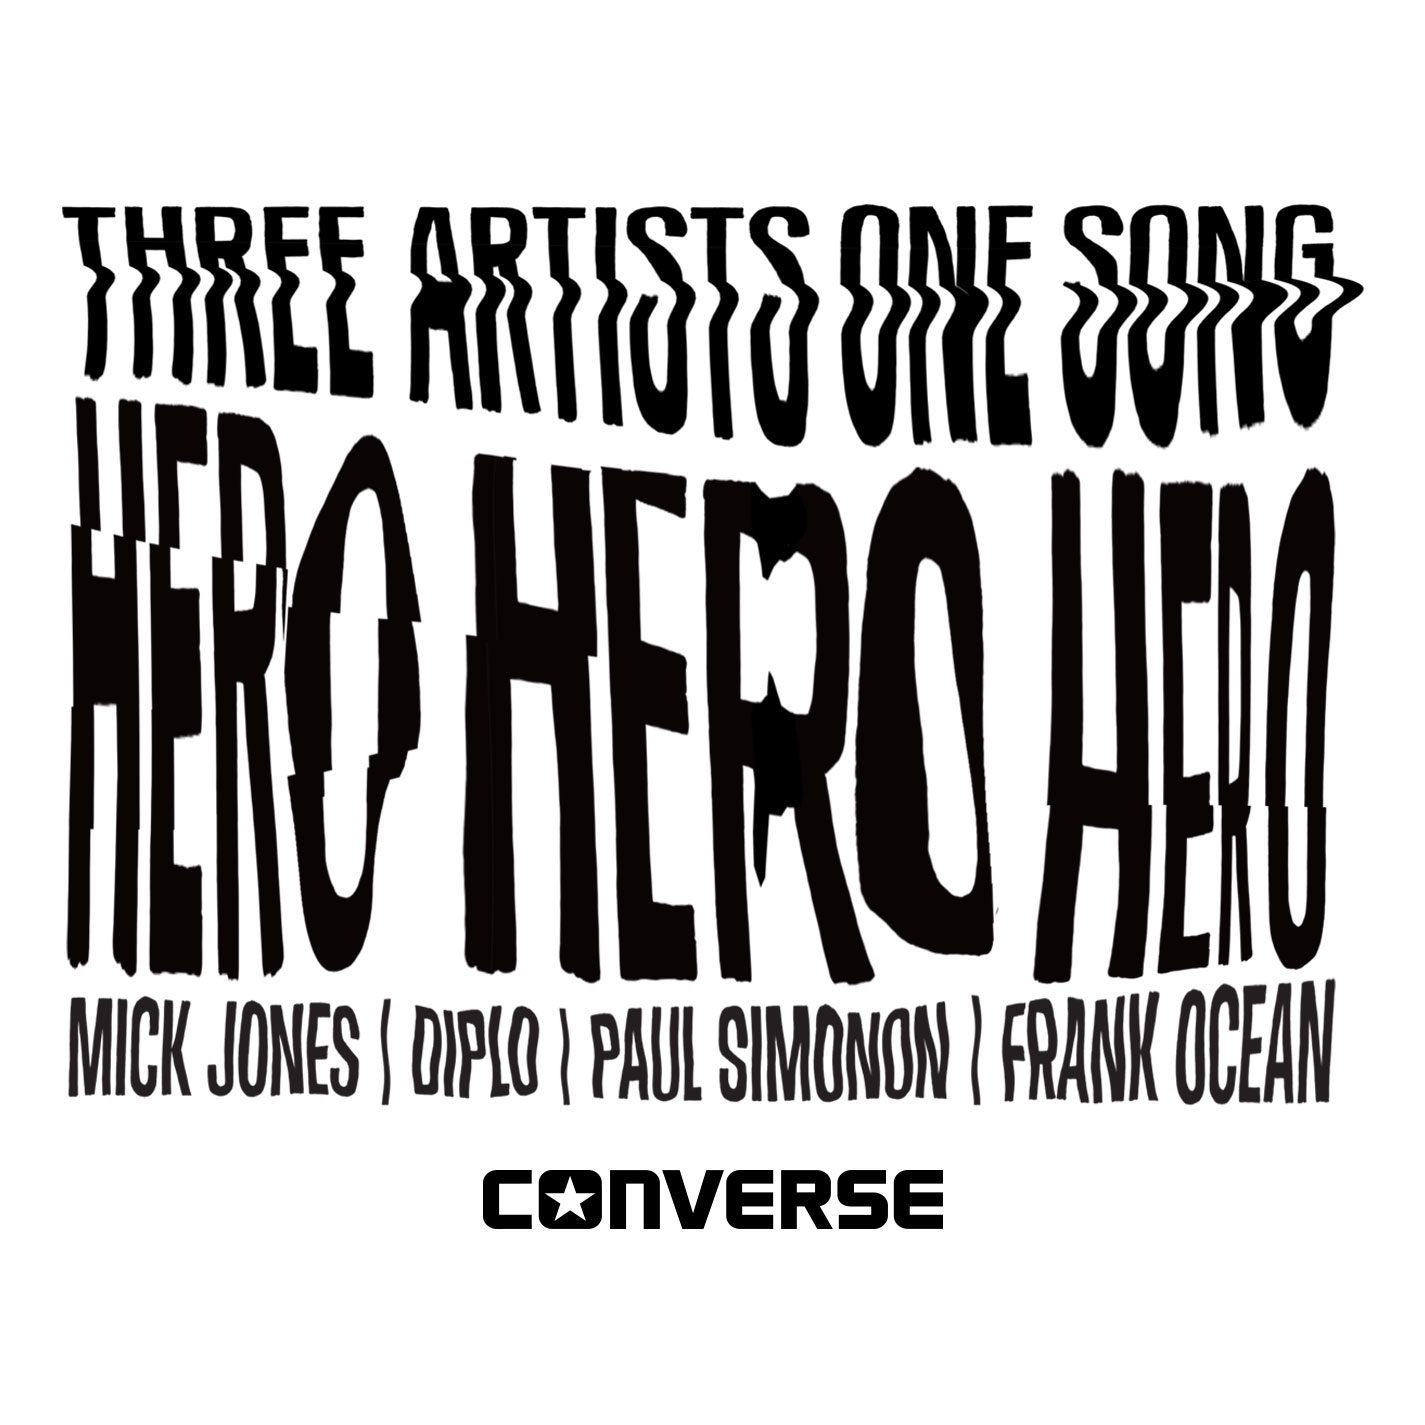 Frank Ocean - Hero